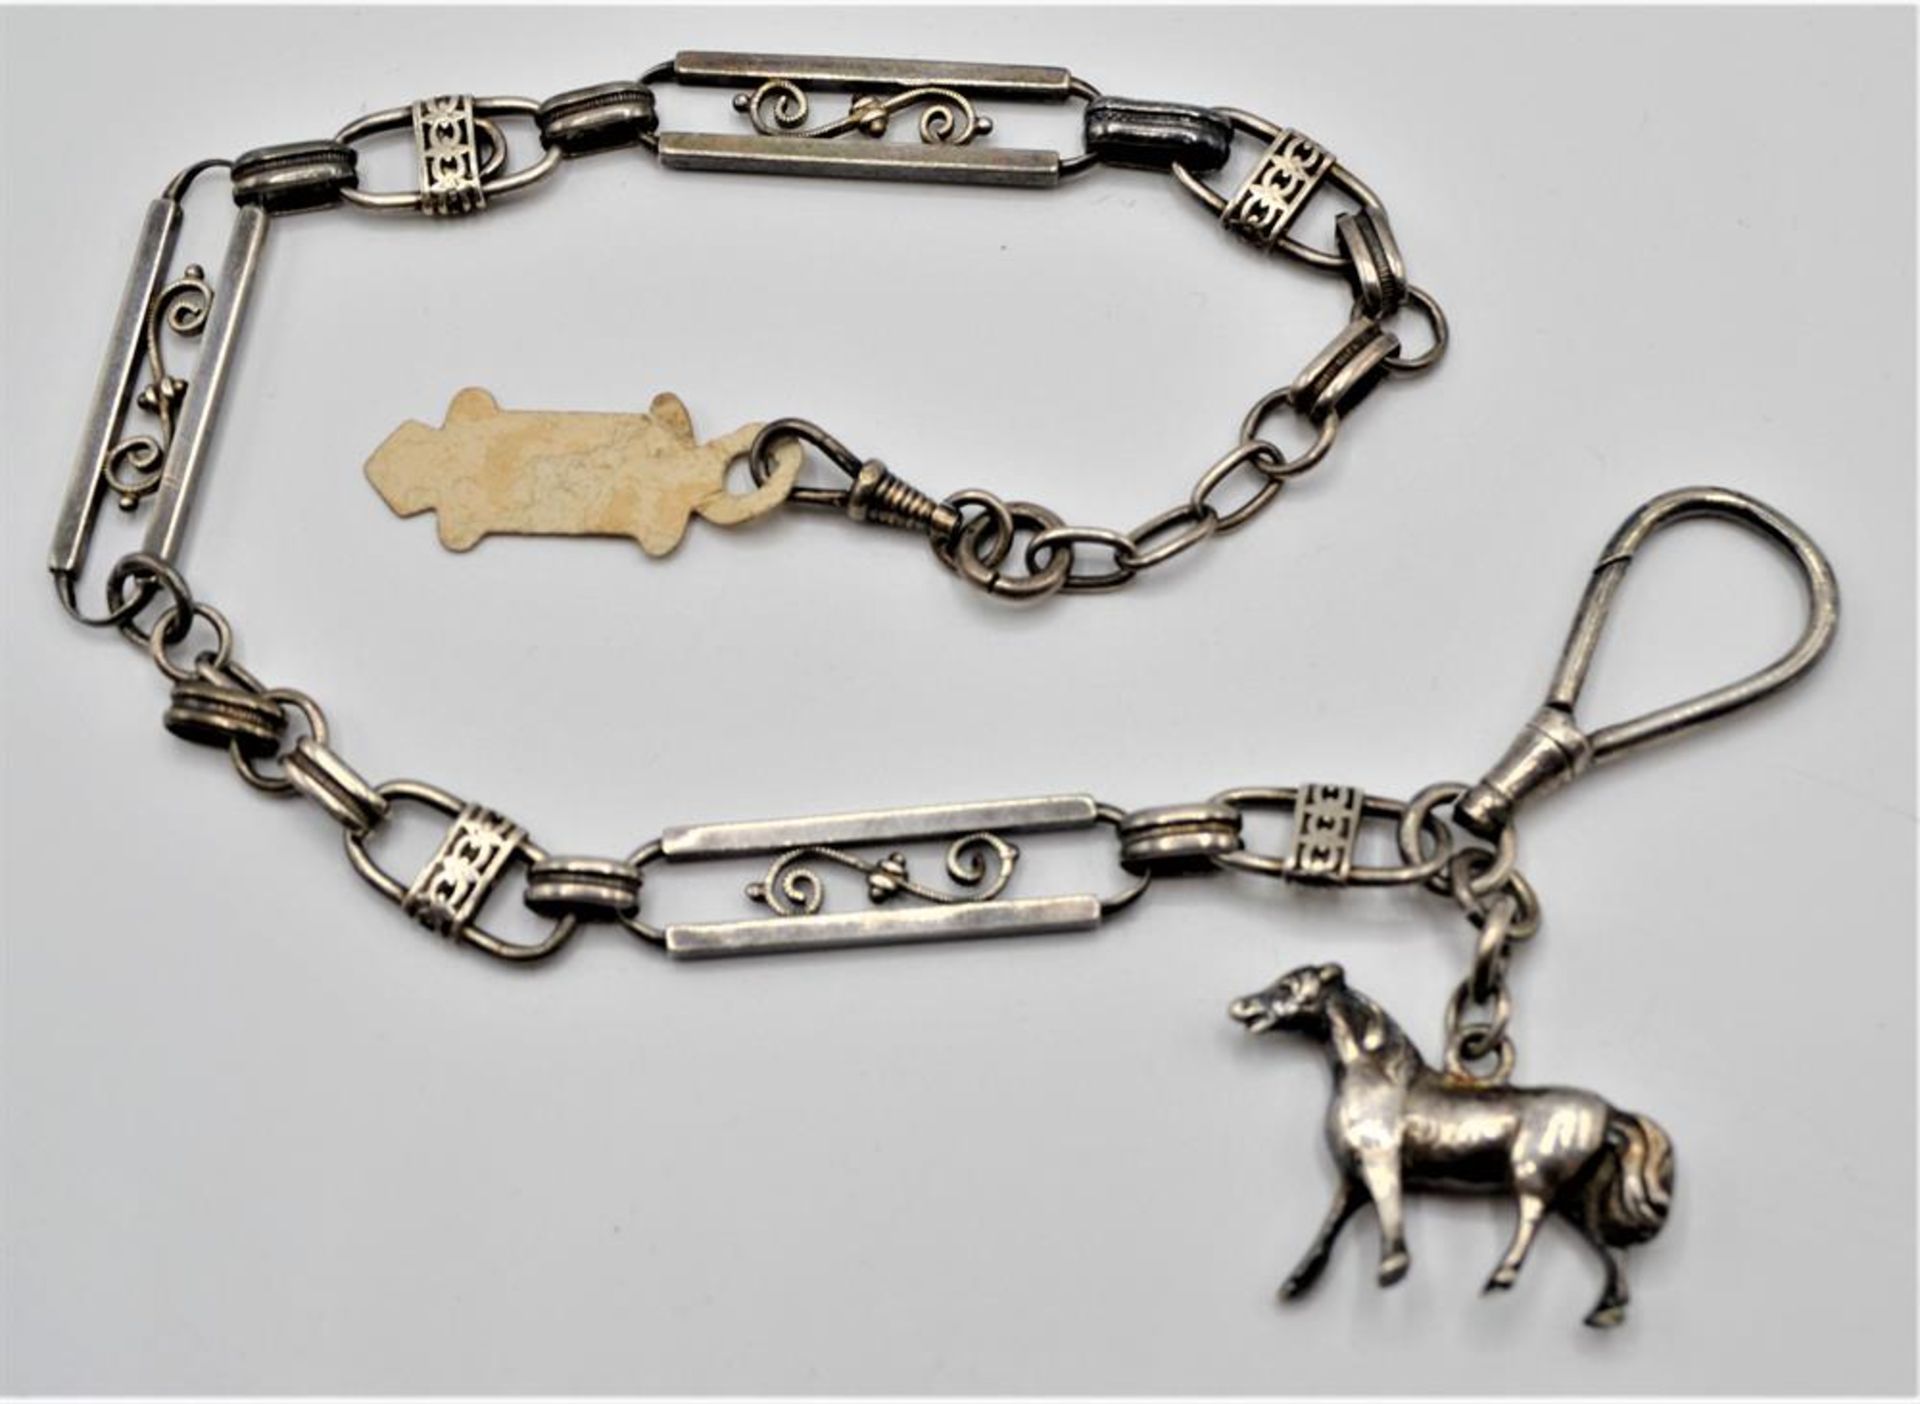 Taschenuhrenkette 800 Silber mit Pferdefigur ( kein Silber ) ca. 36cm